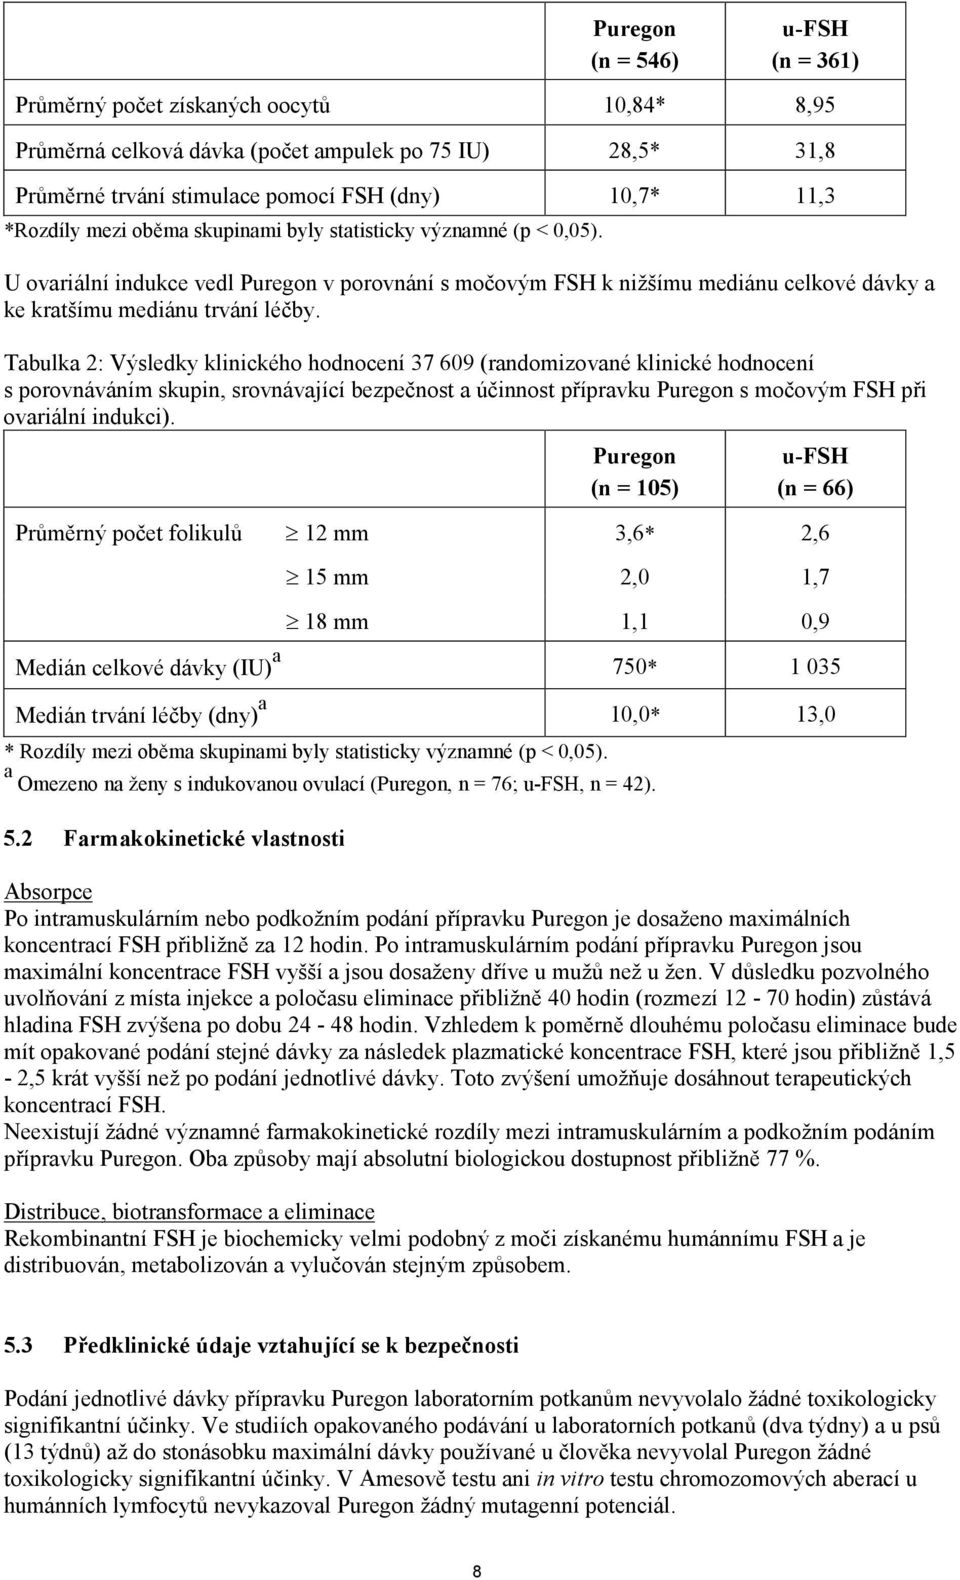 Tabulka 2: Výsledky klinického hodnocení 37 609 (randomizované klinické hodnocení s porovnáváním skupin, srovnávající bezpečnost a účinnost přípravku Puregon s močovým FSH při ovariální indukci).